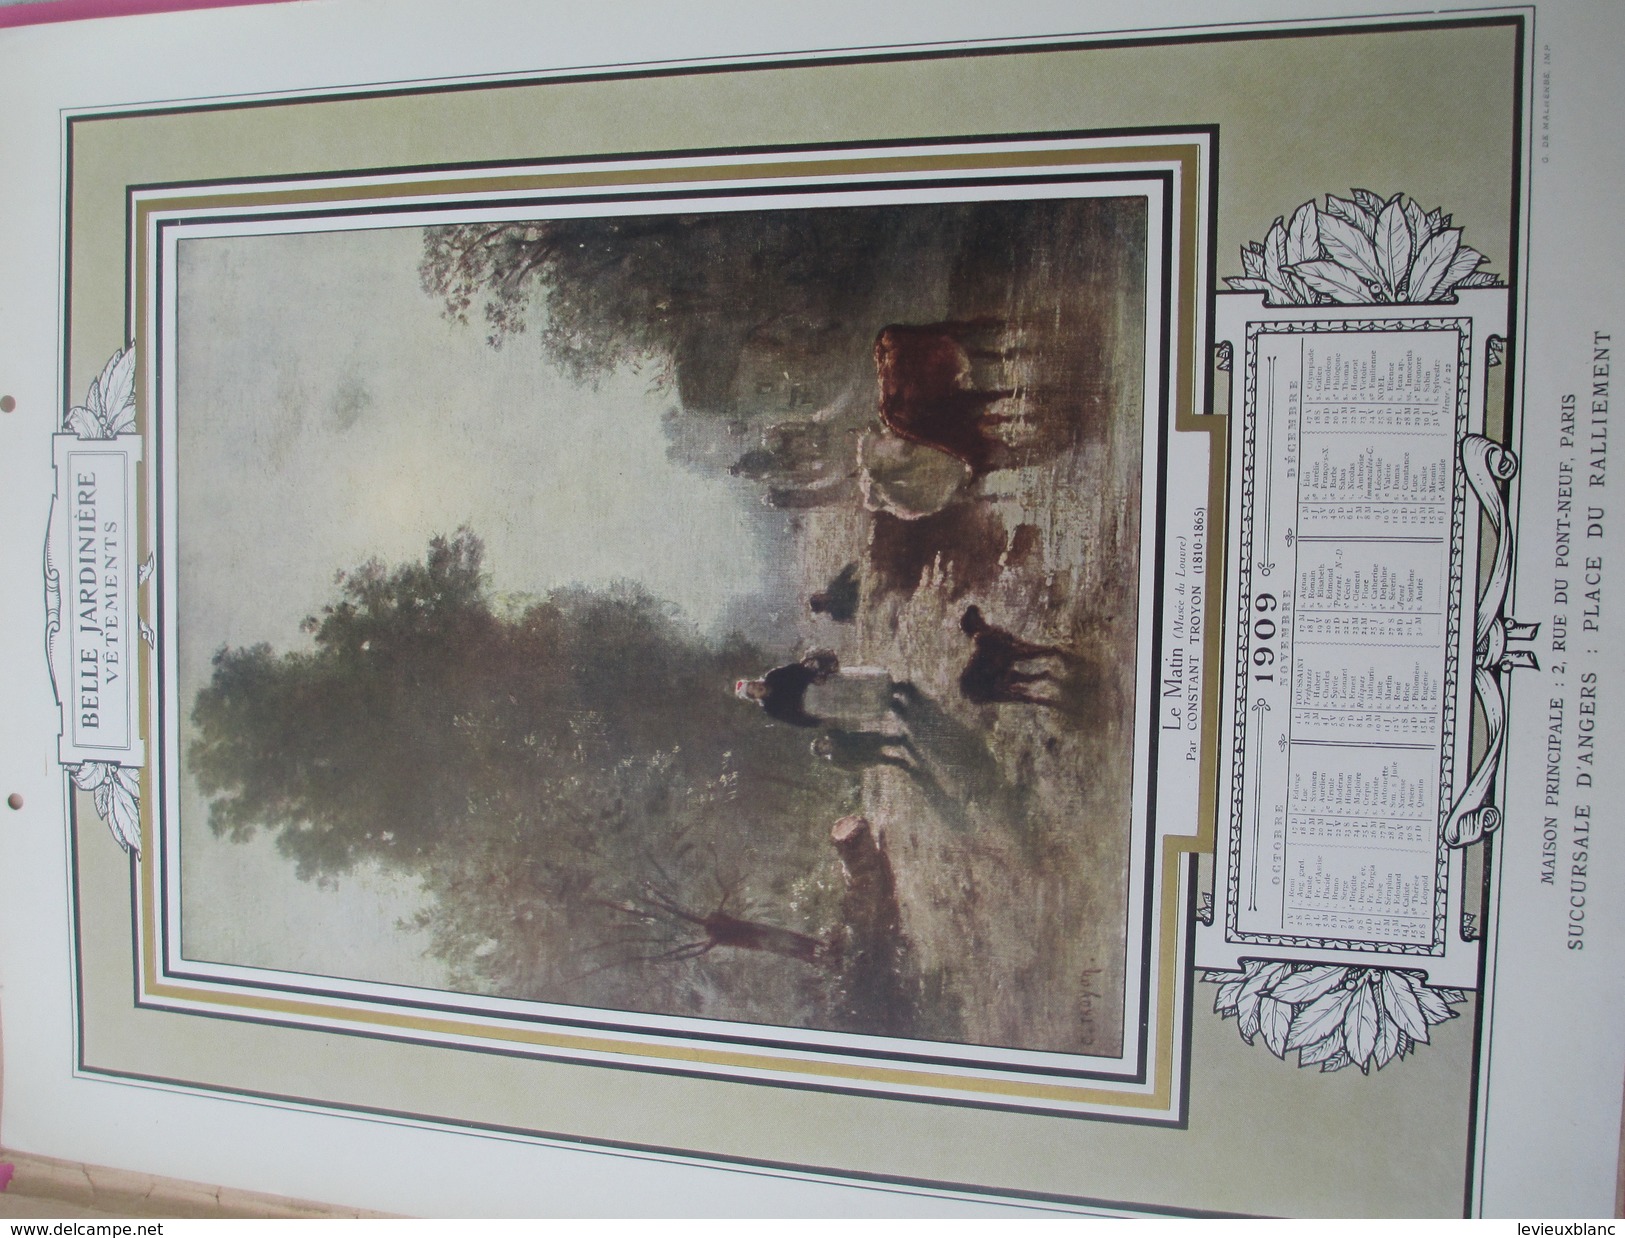 Calendrier de Luxe très grand format/offert par la BELLE JARDINIERE/Chefs d'oeuvre de la Peinture/Angers/1909 CAL382